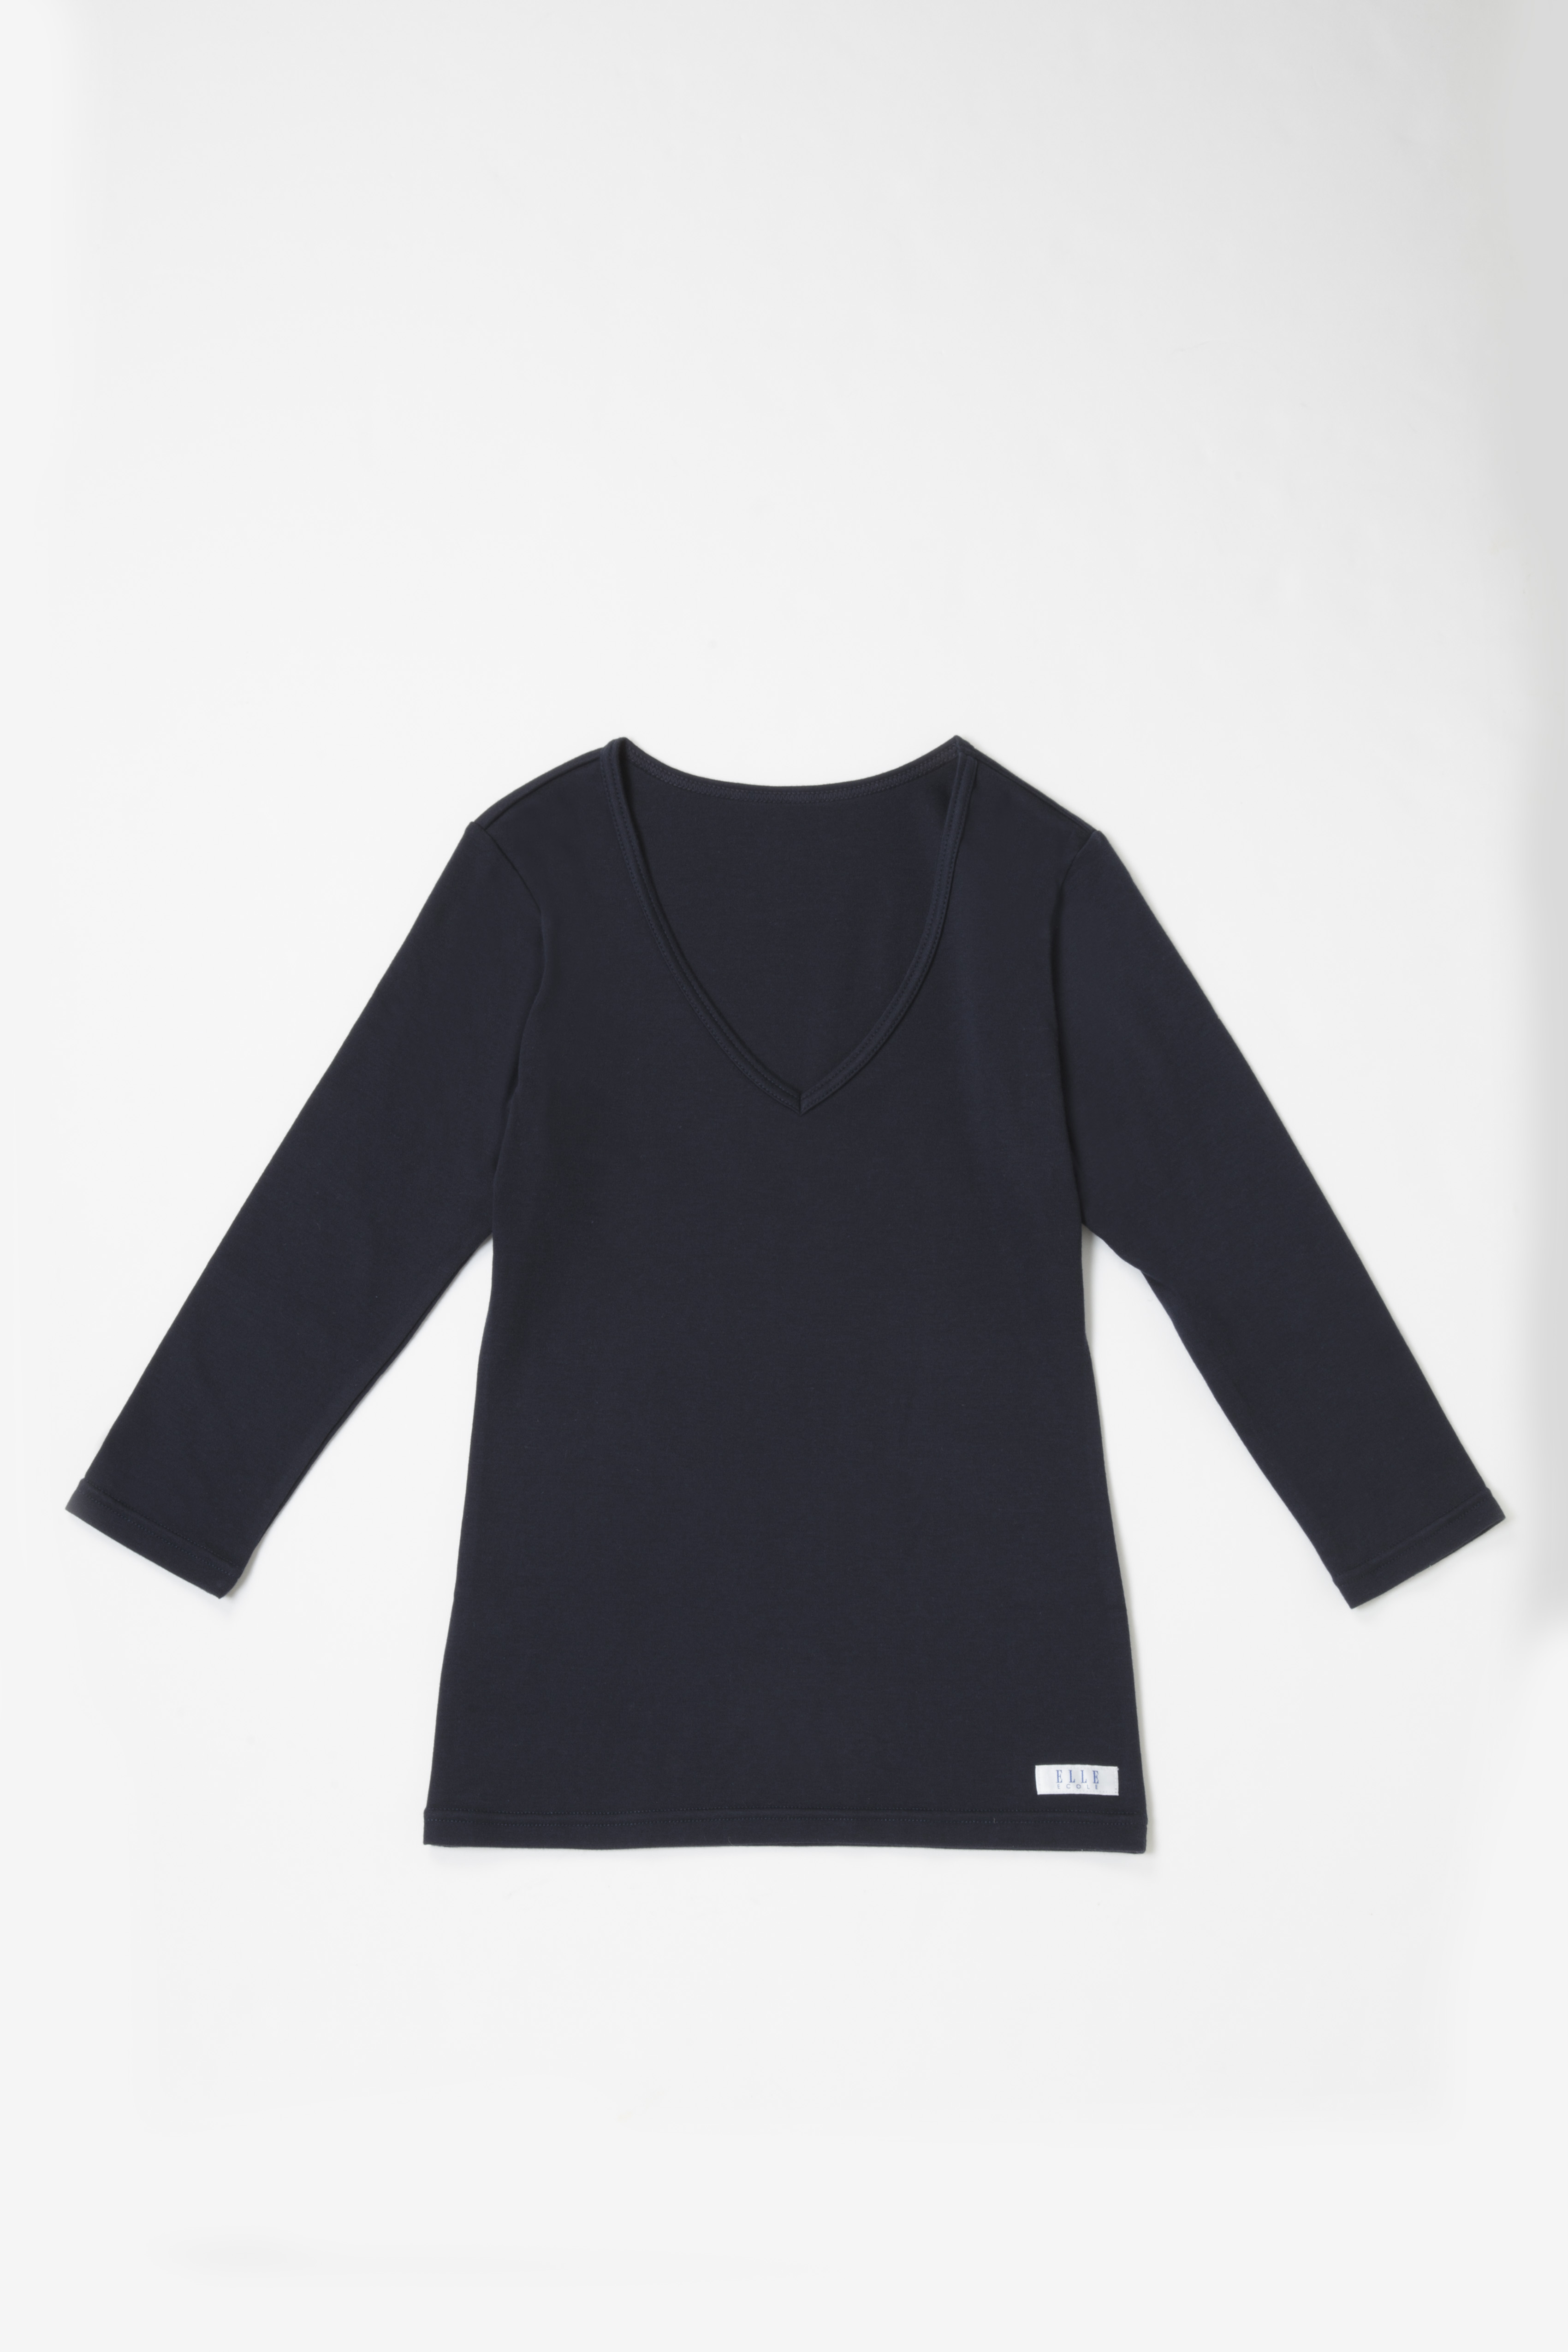 ７分袖インナーシャツ Elle Ecole 公式通販 制服 スクールアイテムのカンコーオンラインショップ原宿